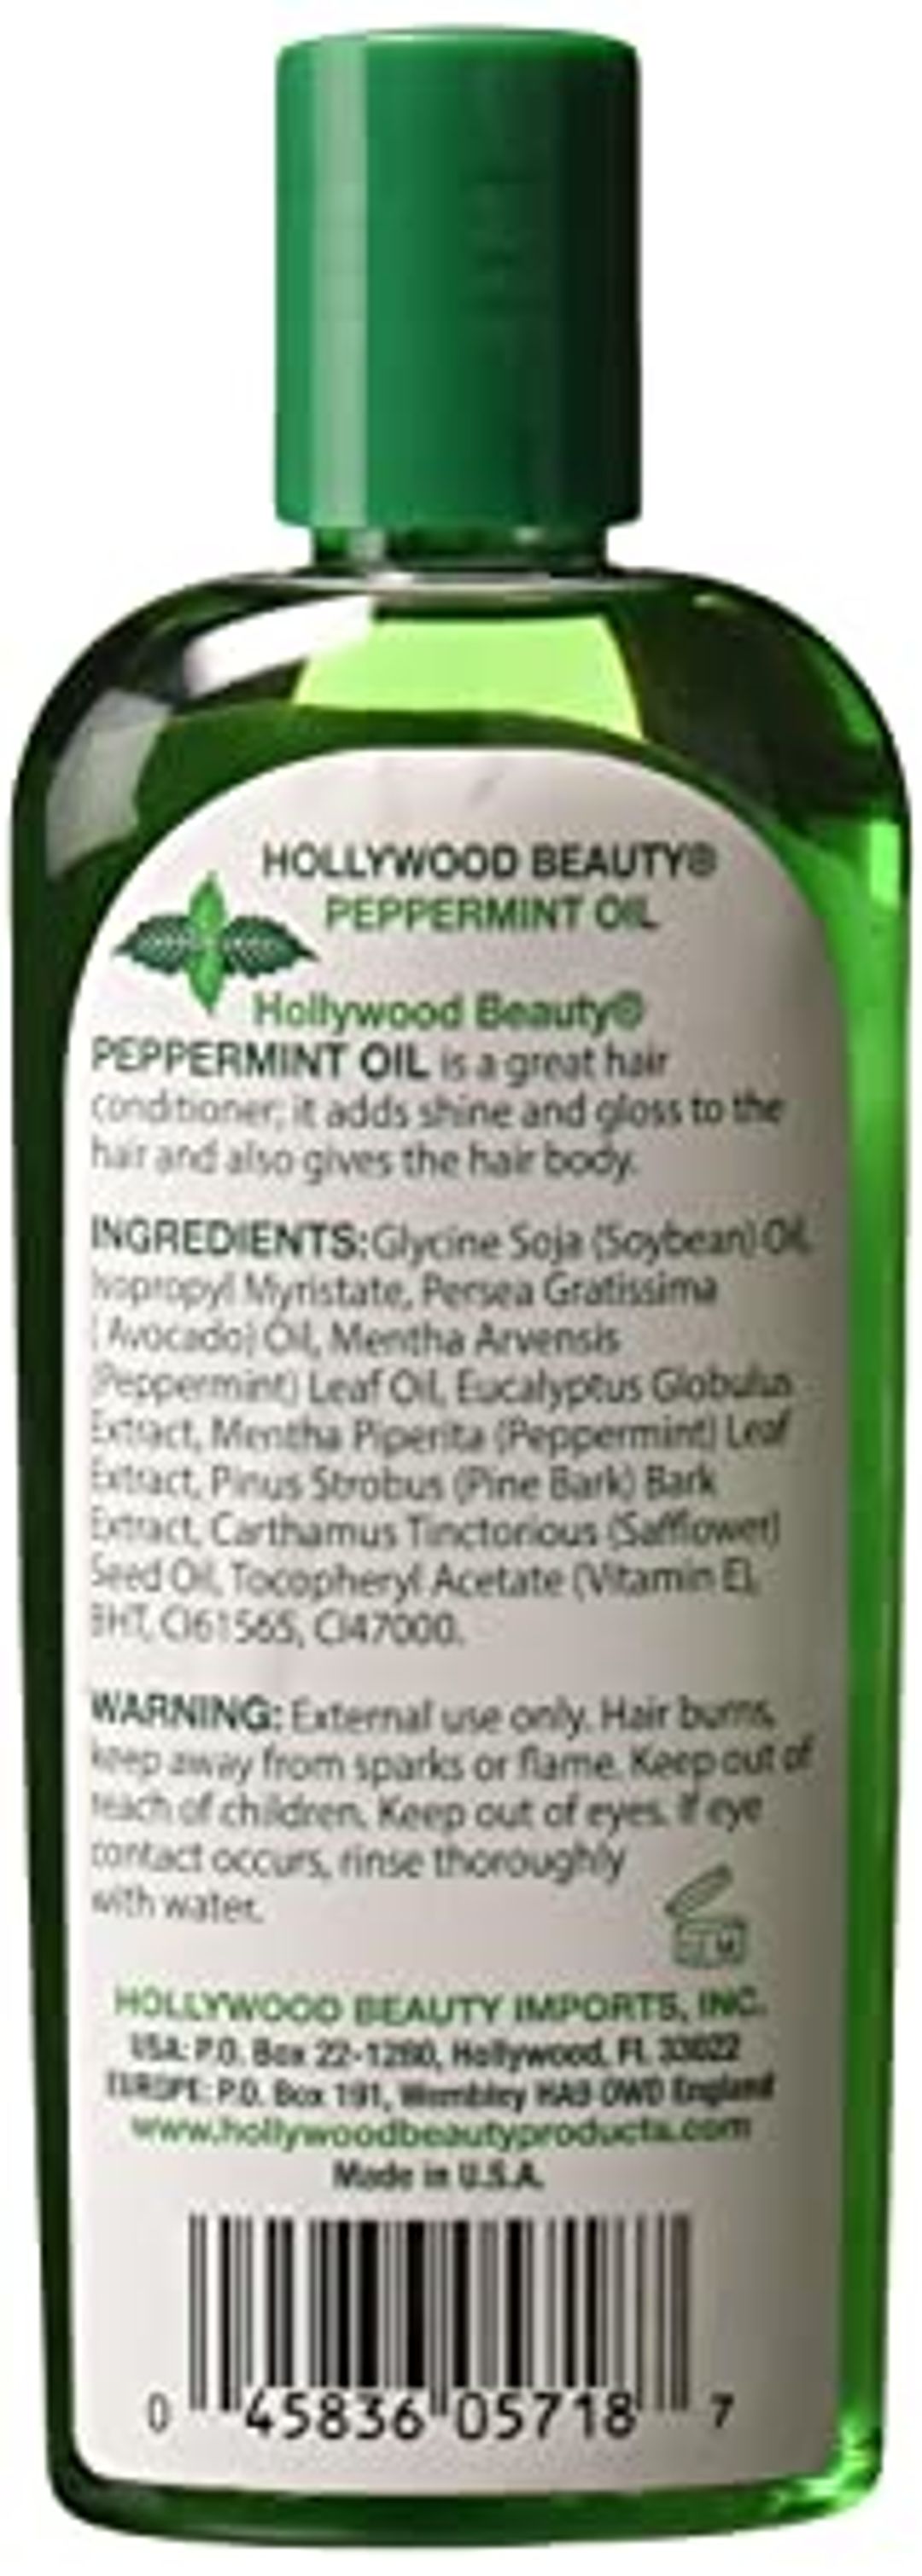 Hollywood Beauty Peppermint Oil - 8oz